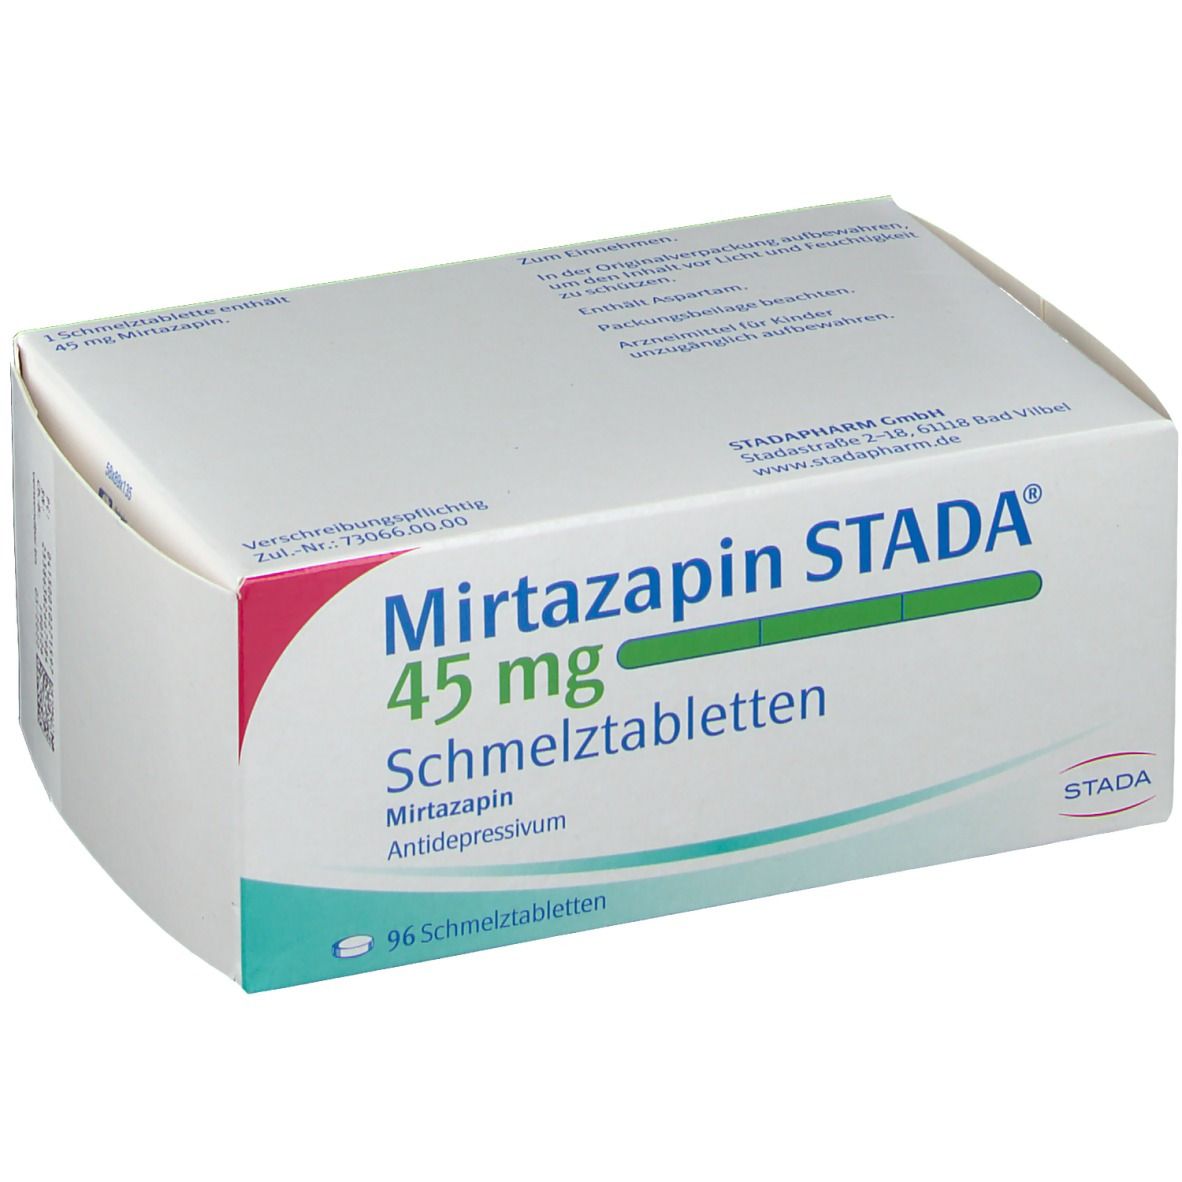 Mirtazapin STADA® 45 mg Schmelztabletten